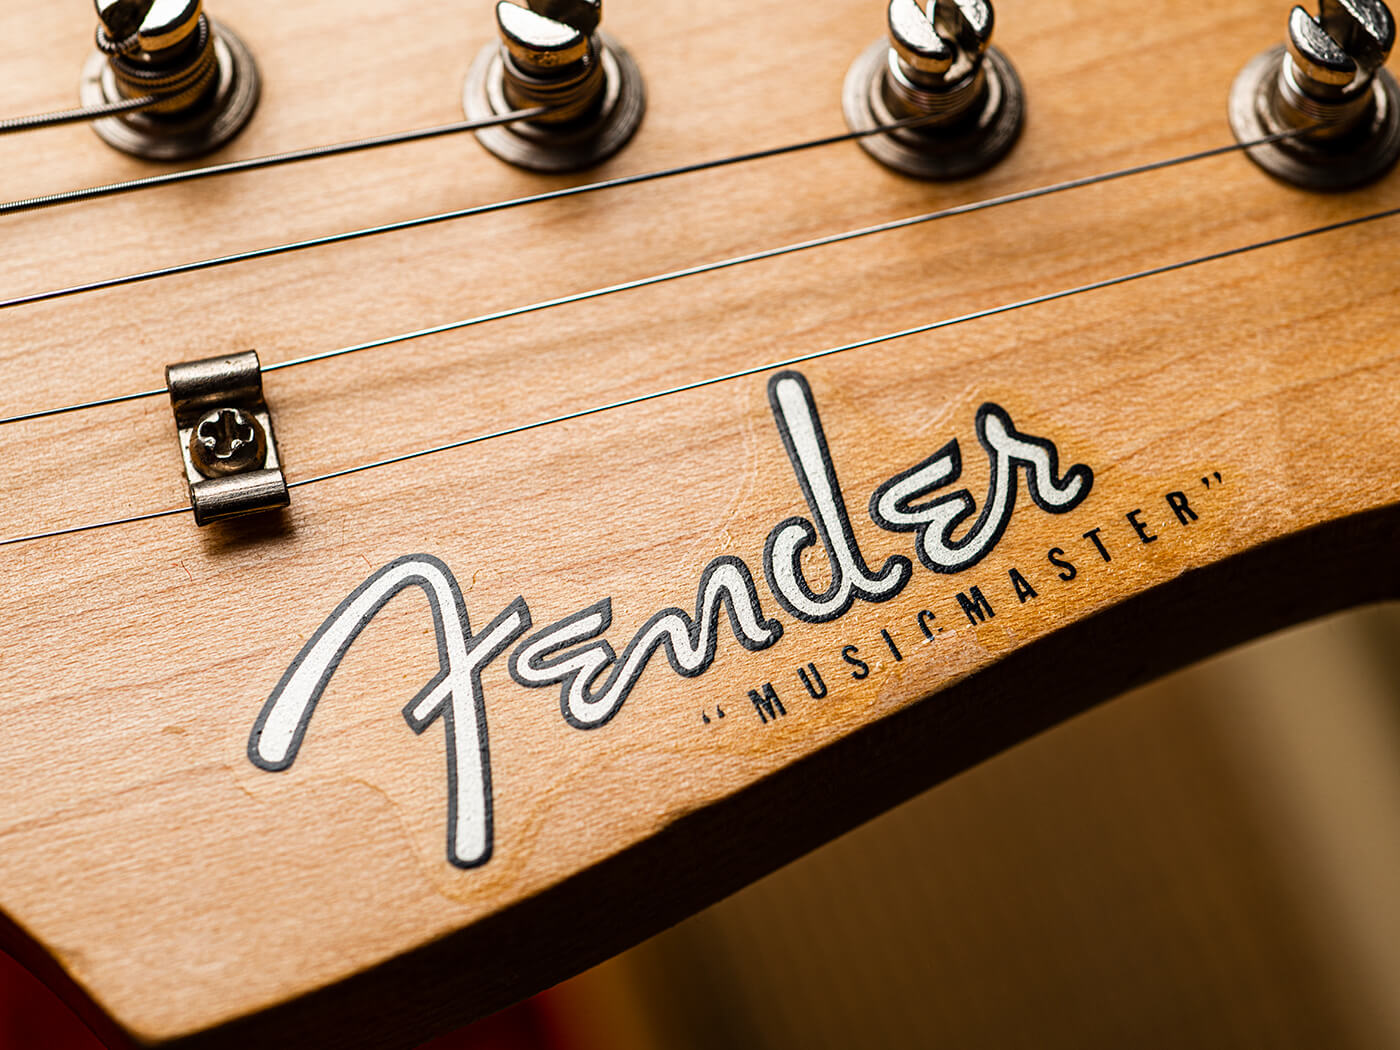 Fender Musicmaster